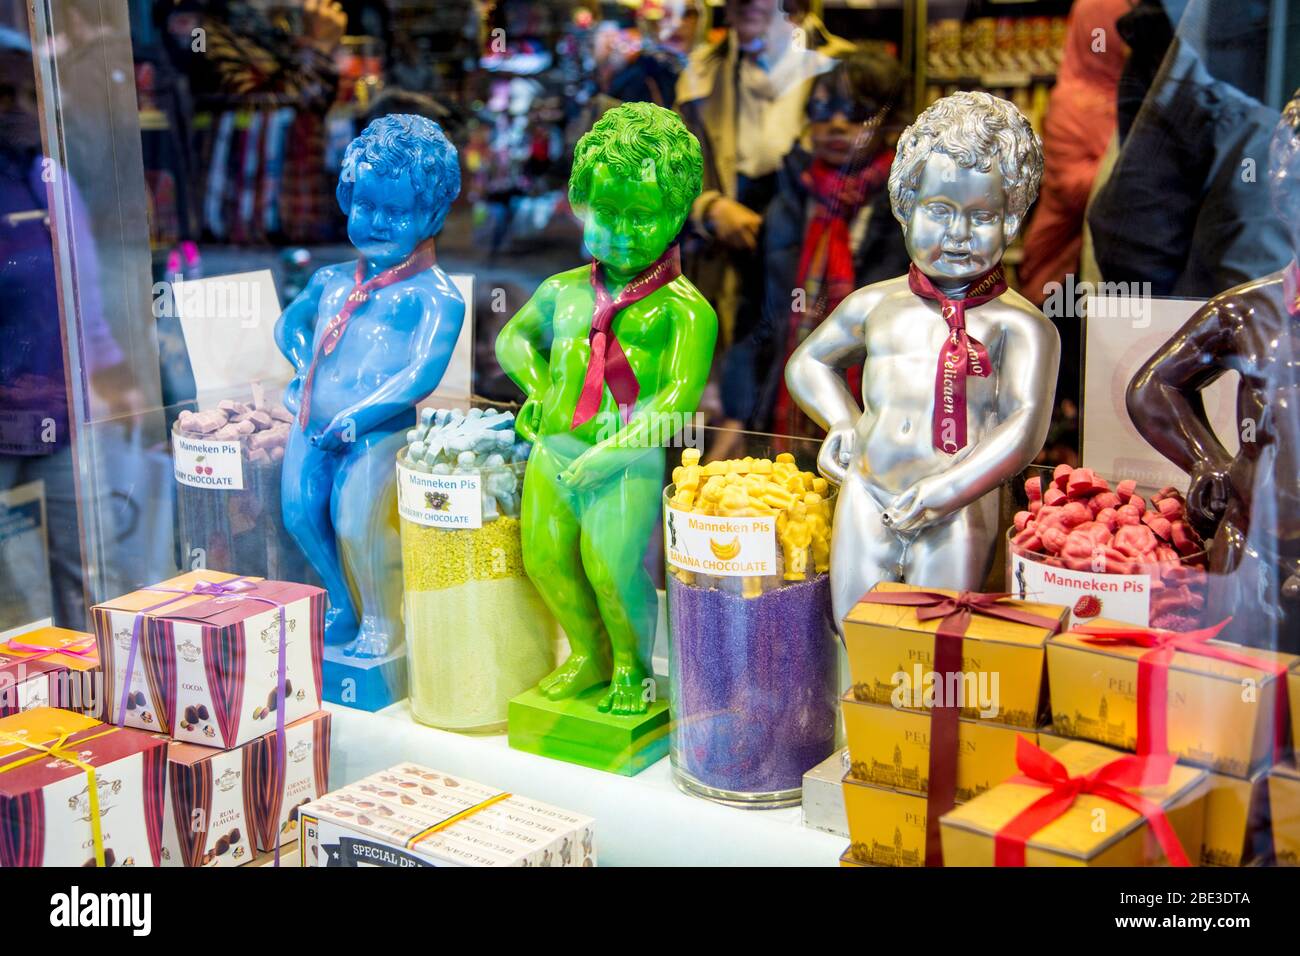 Riproduzioni colorate della scultura del Manneken Pis in una vetrina di negozi di dolci, Bruxelles, Belgio Foto Stock